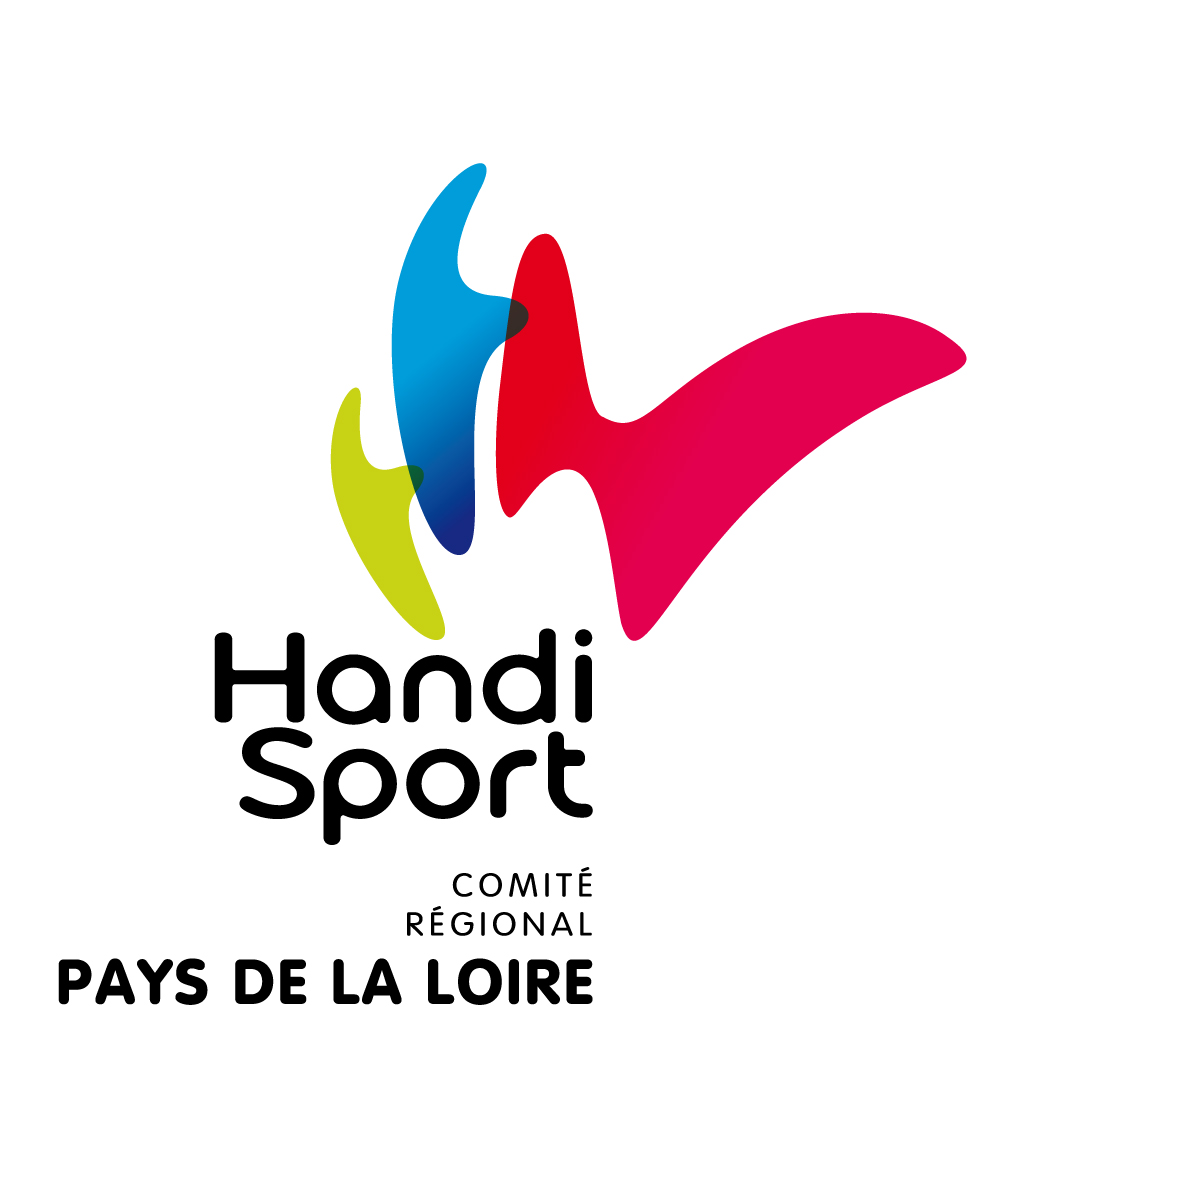 Comité Régional Handisport des Pays de la Loire (CRH PDL)